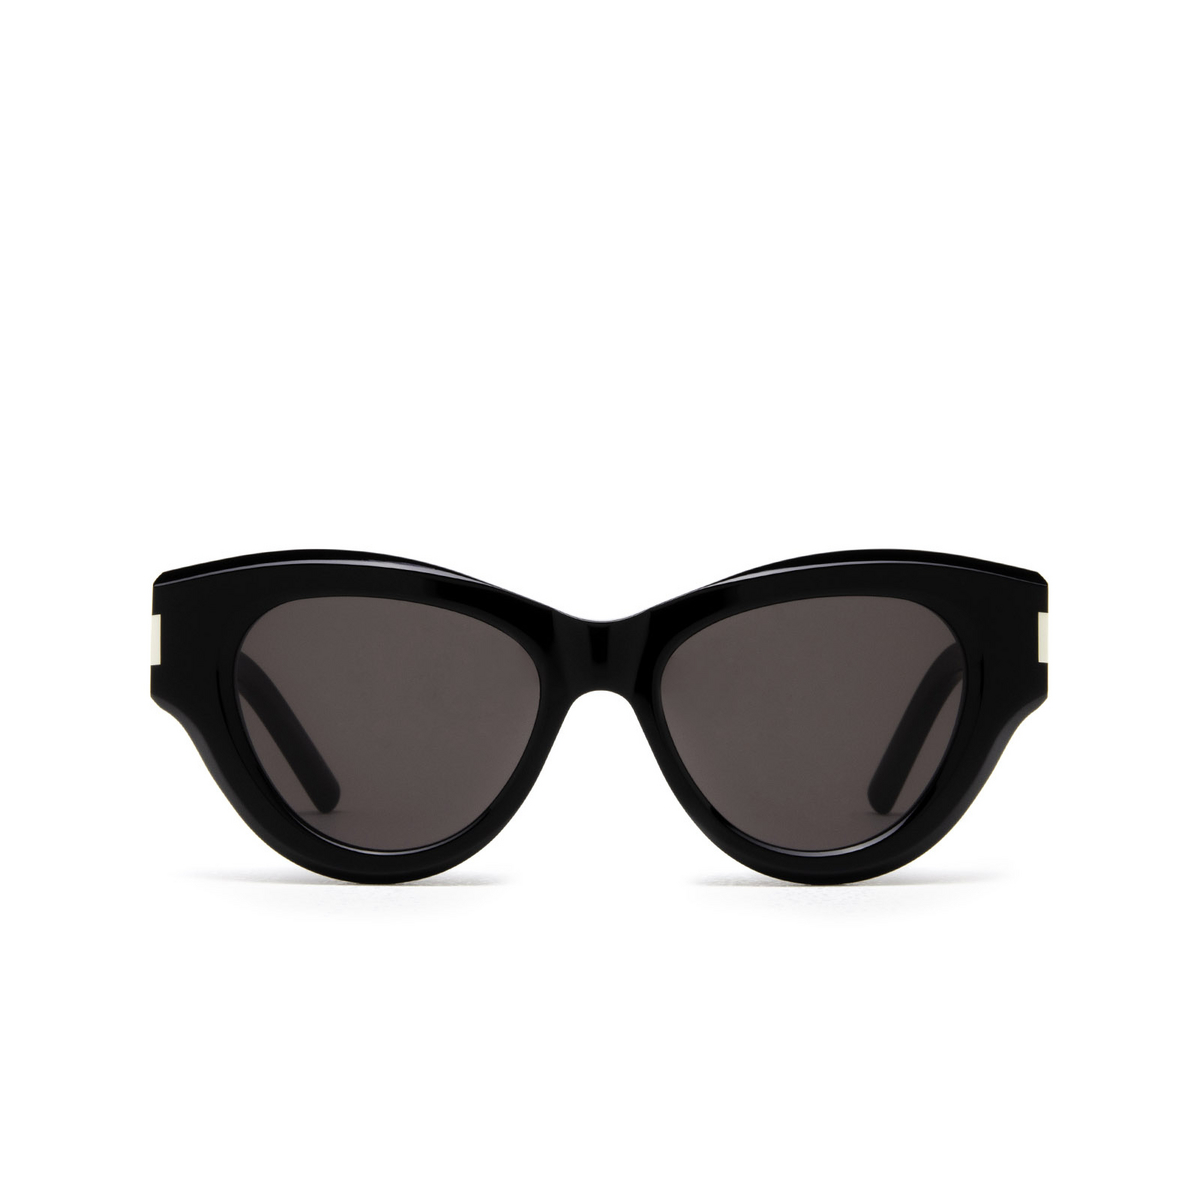 Saint Laurent SL 506 Sunglasses 001 Black - front view